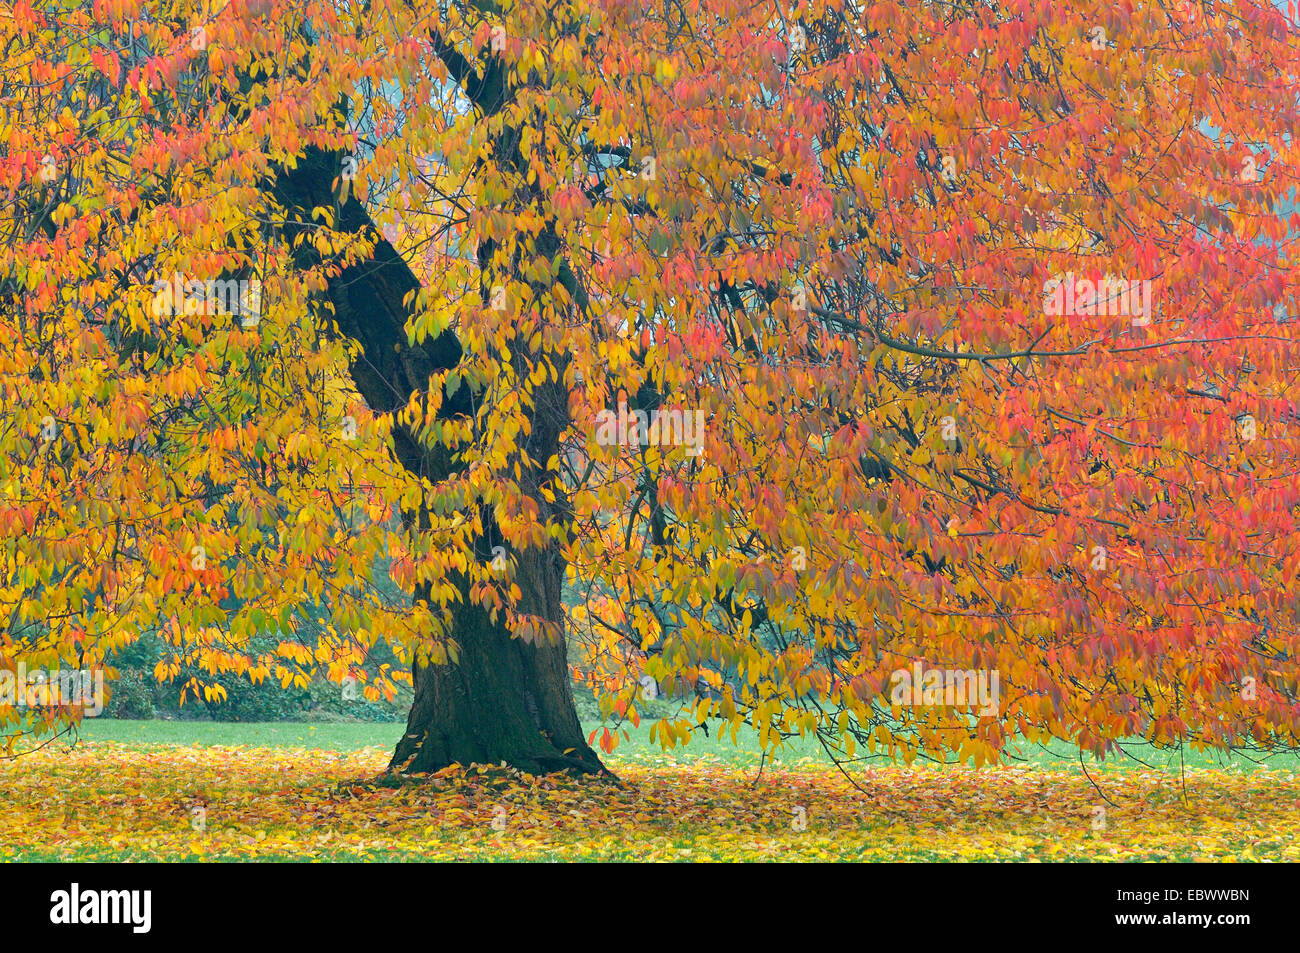 Wild cherry, Sweet cherry, gean, mazzard (Prunus avium), cherry tree in autumn, Germany Stock Photo